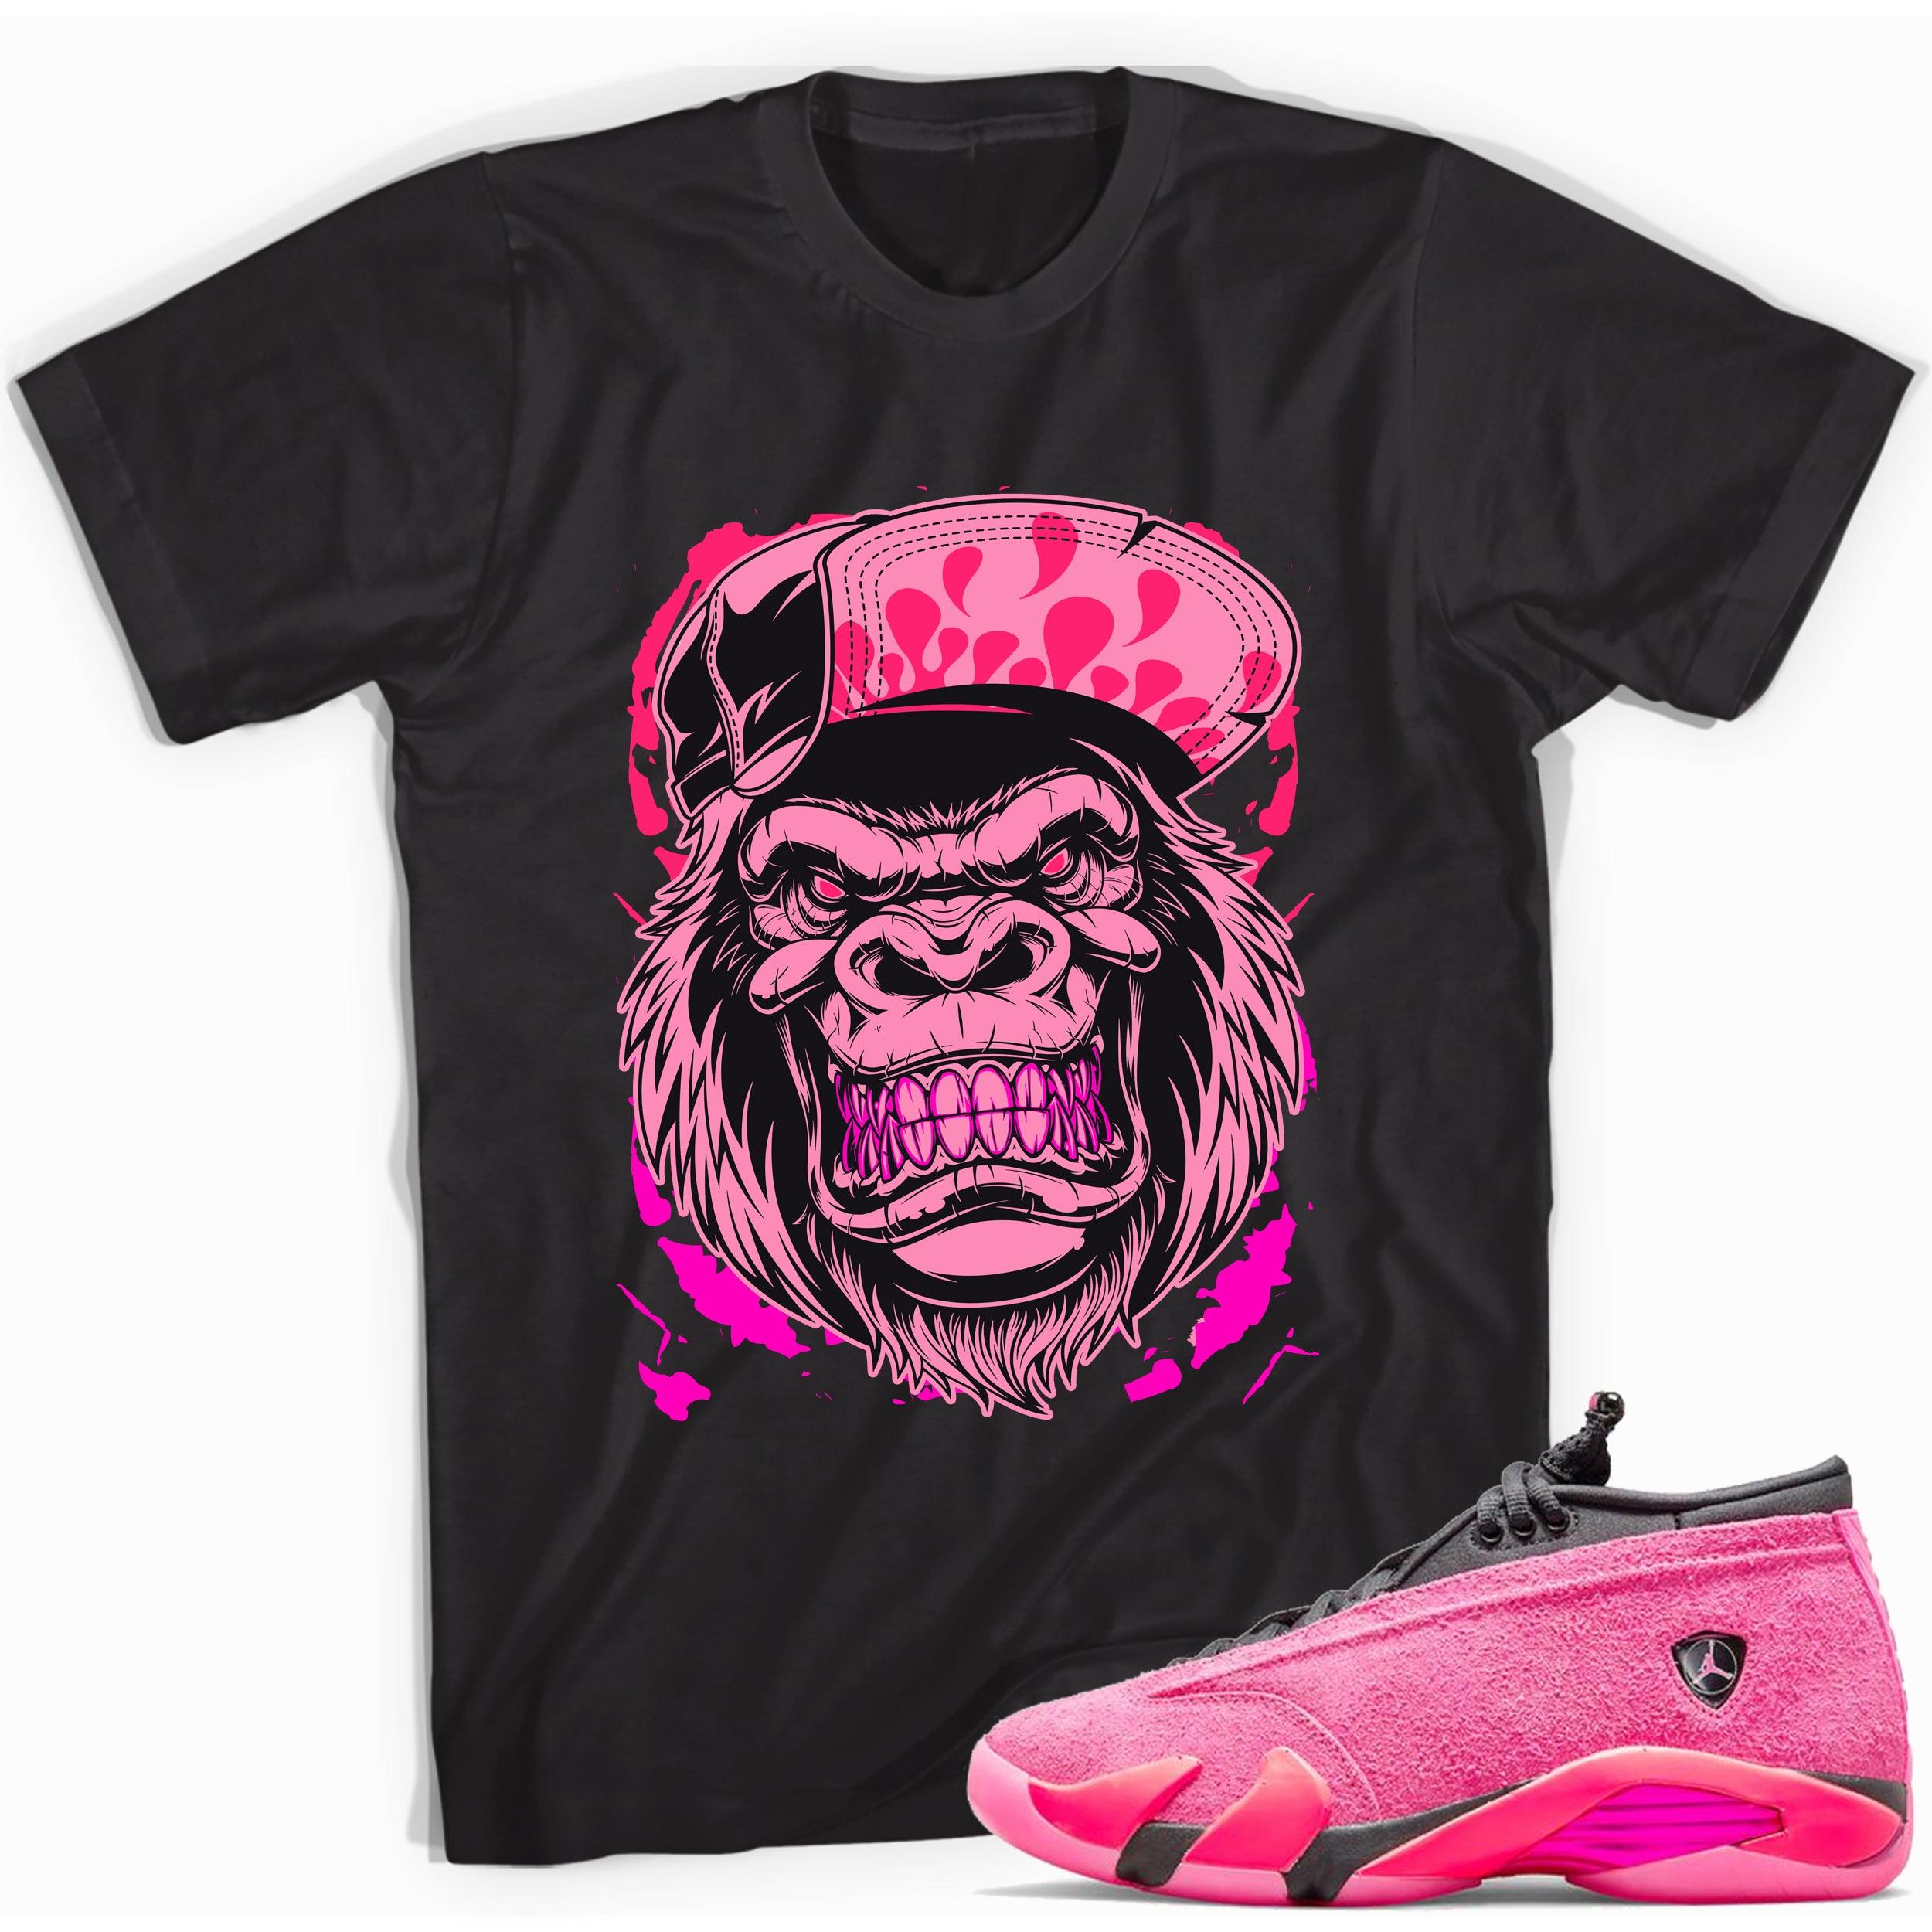 Black Gorilla Beast Shirt AJ 14 Low Shocking Pink photo